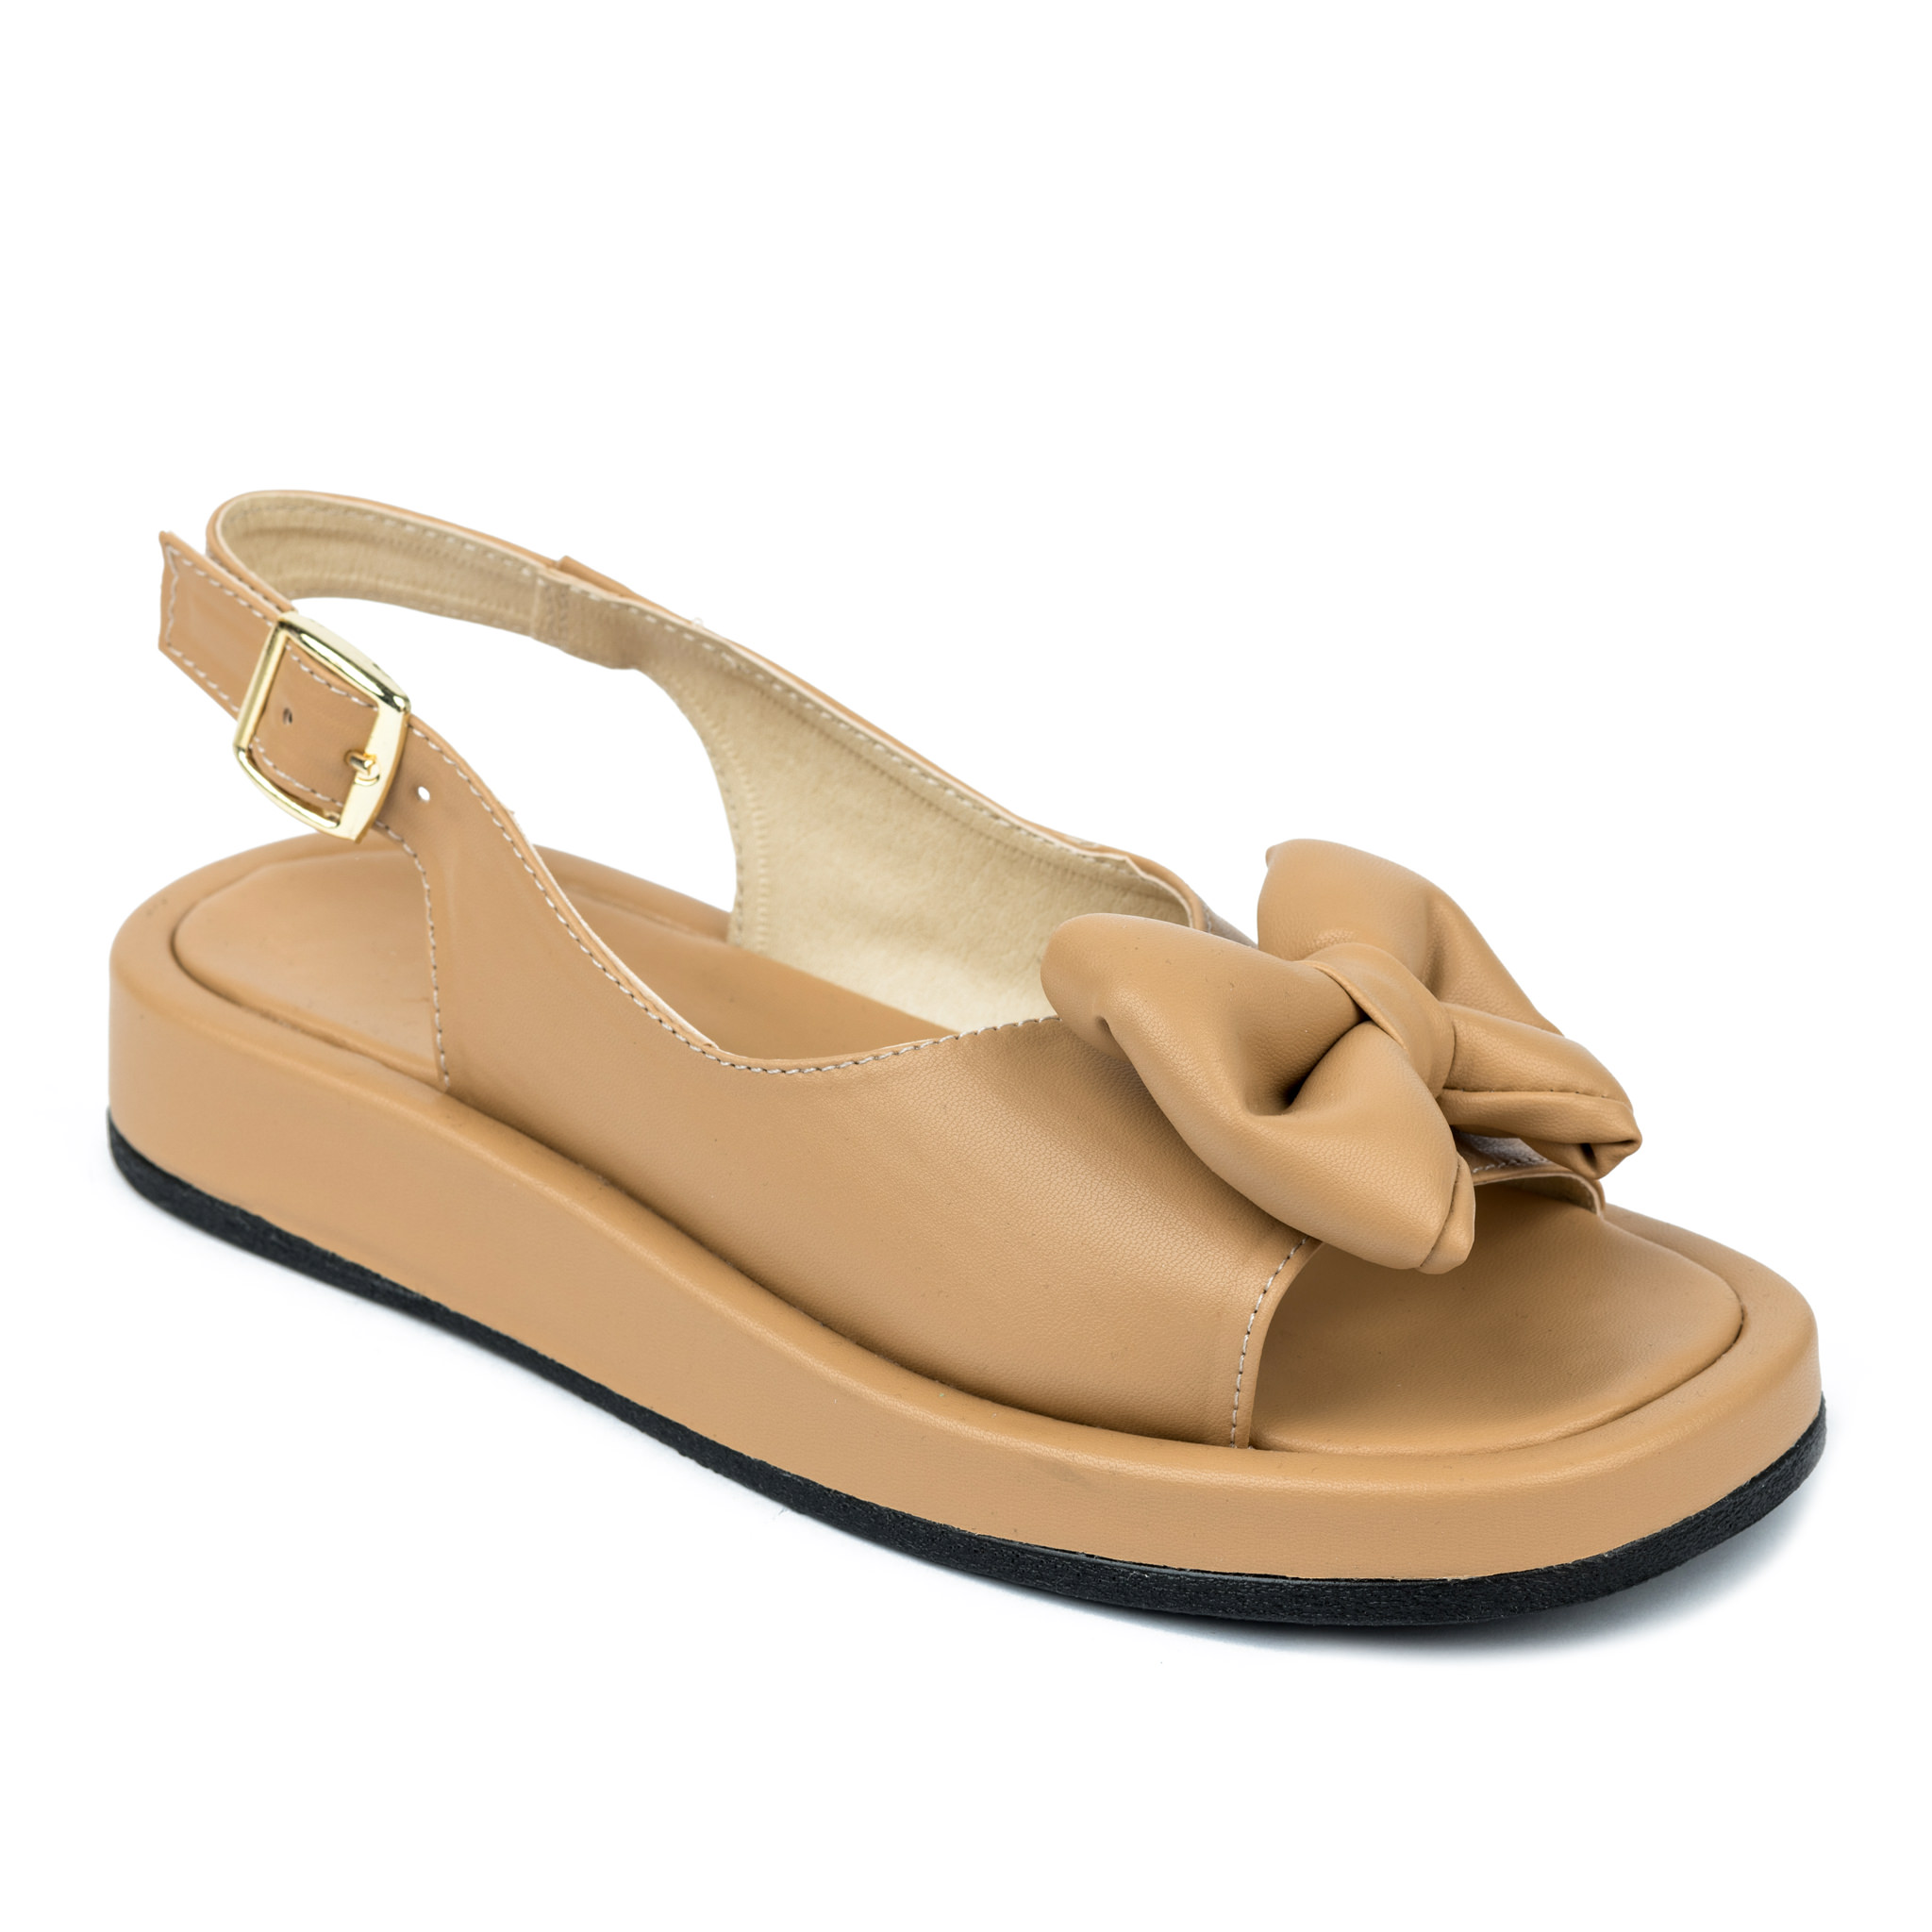 Women sandals A475 - BEIGE